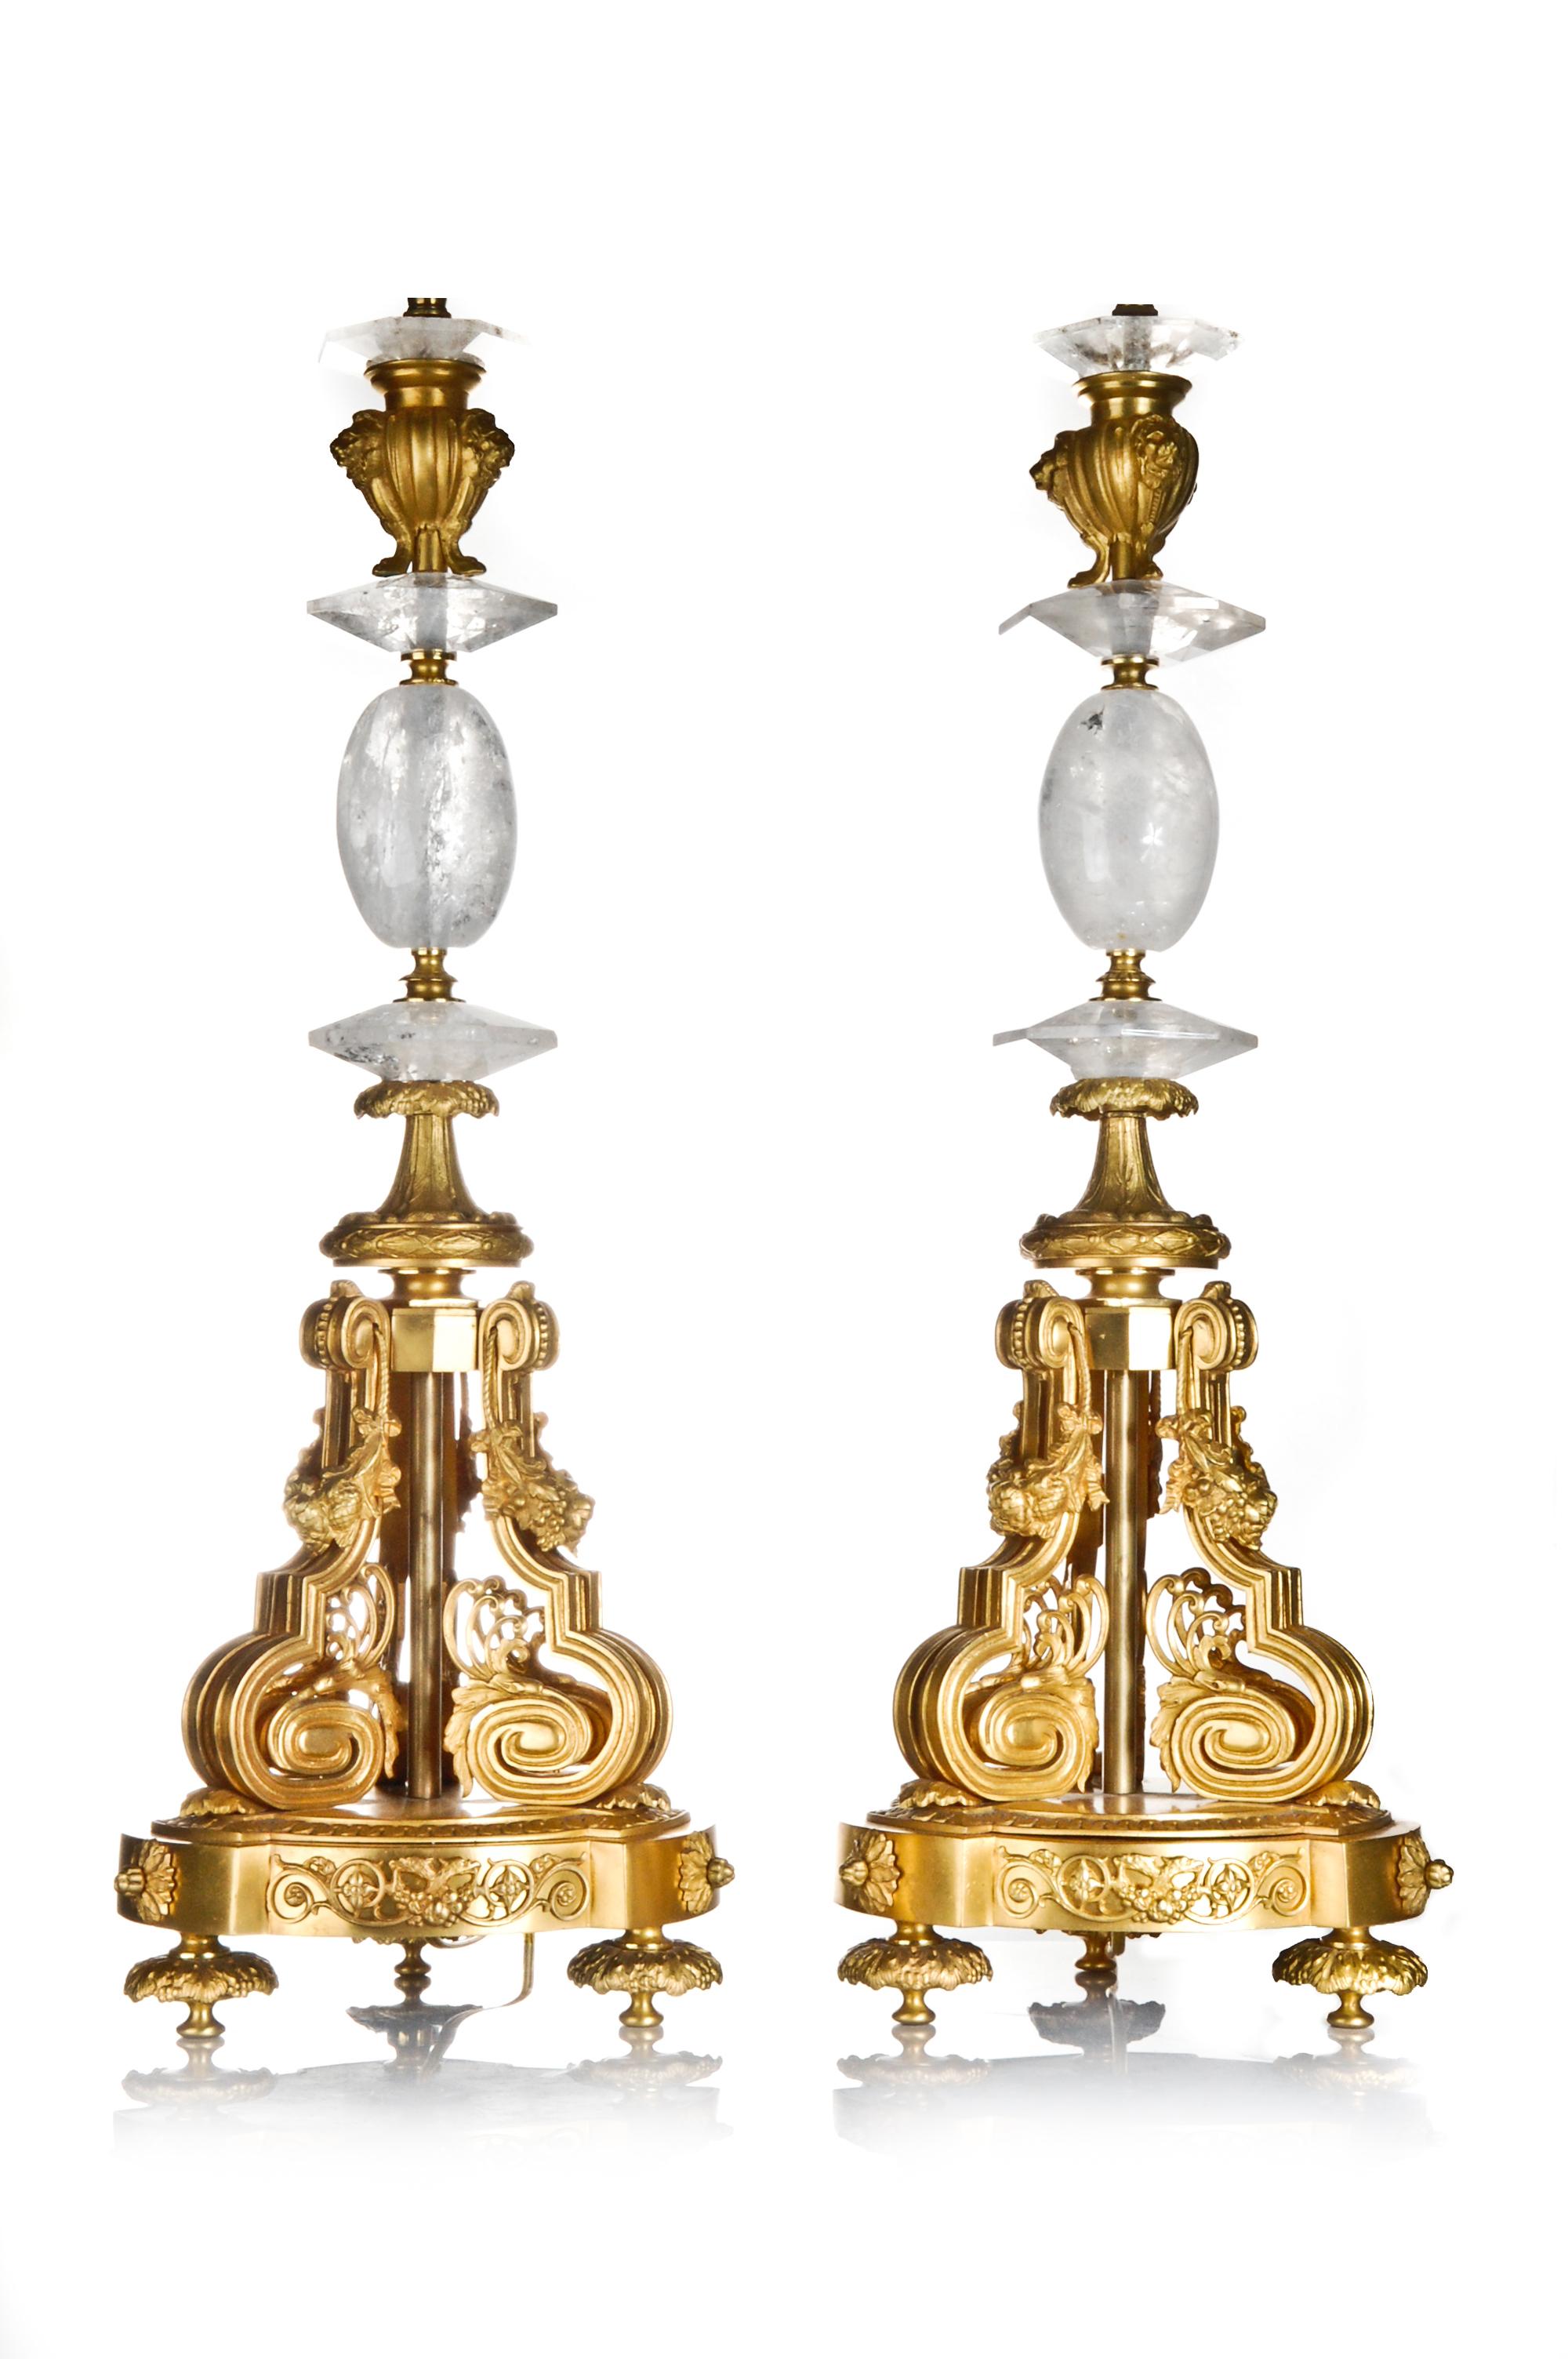 Une paire de spectaculaires lampes françaises de style Louis XVI en cristal de roche taillé et bronze doré, ornées de fleurs et de masques figuratifs.